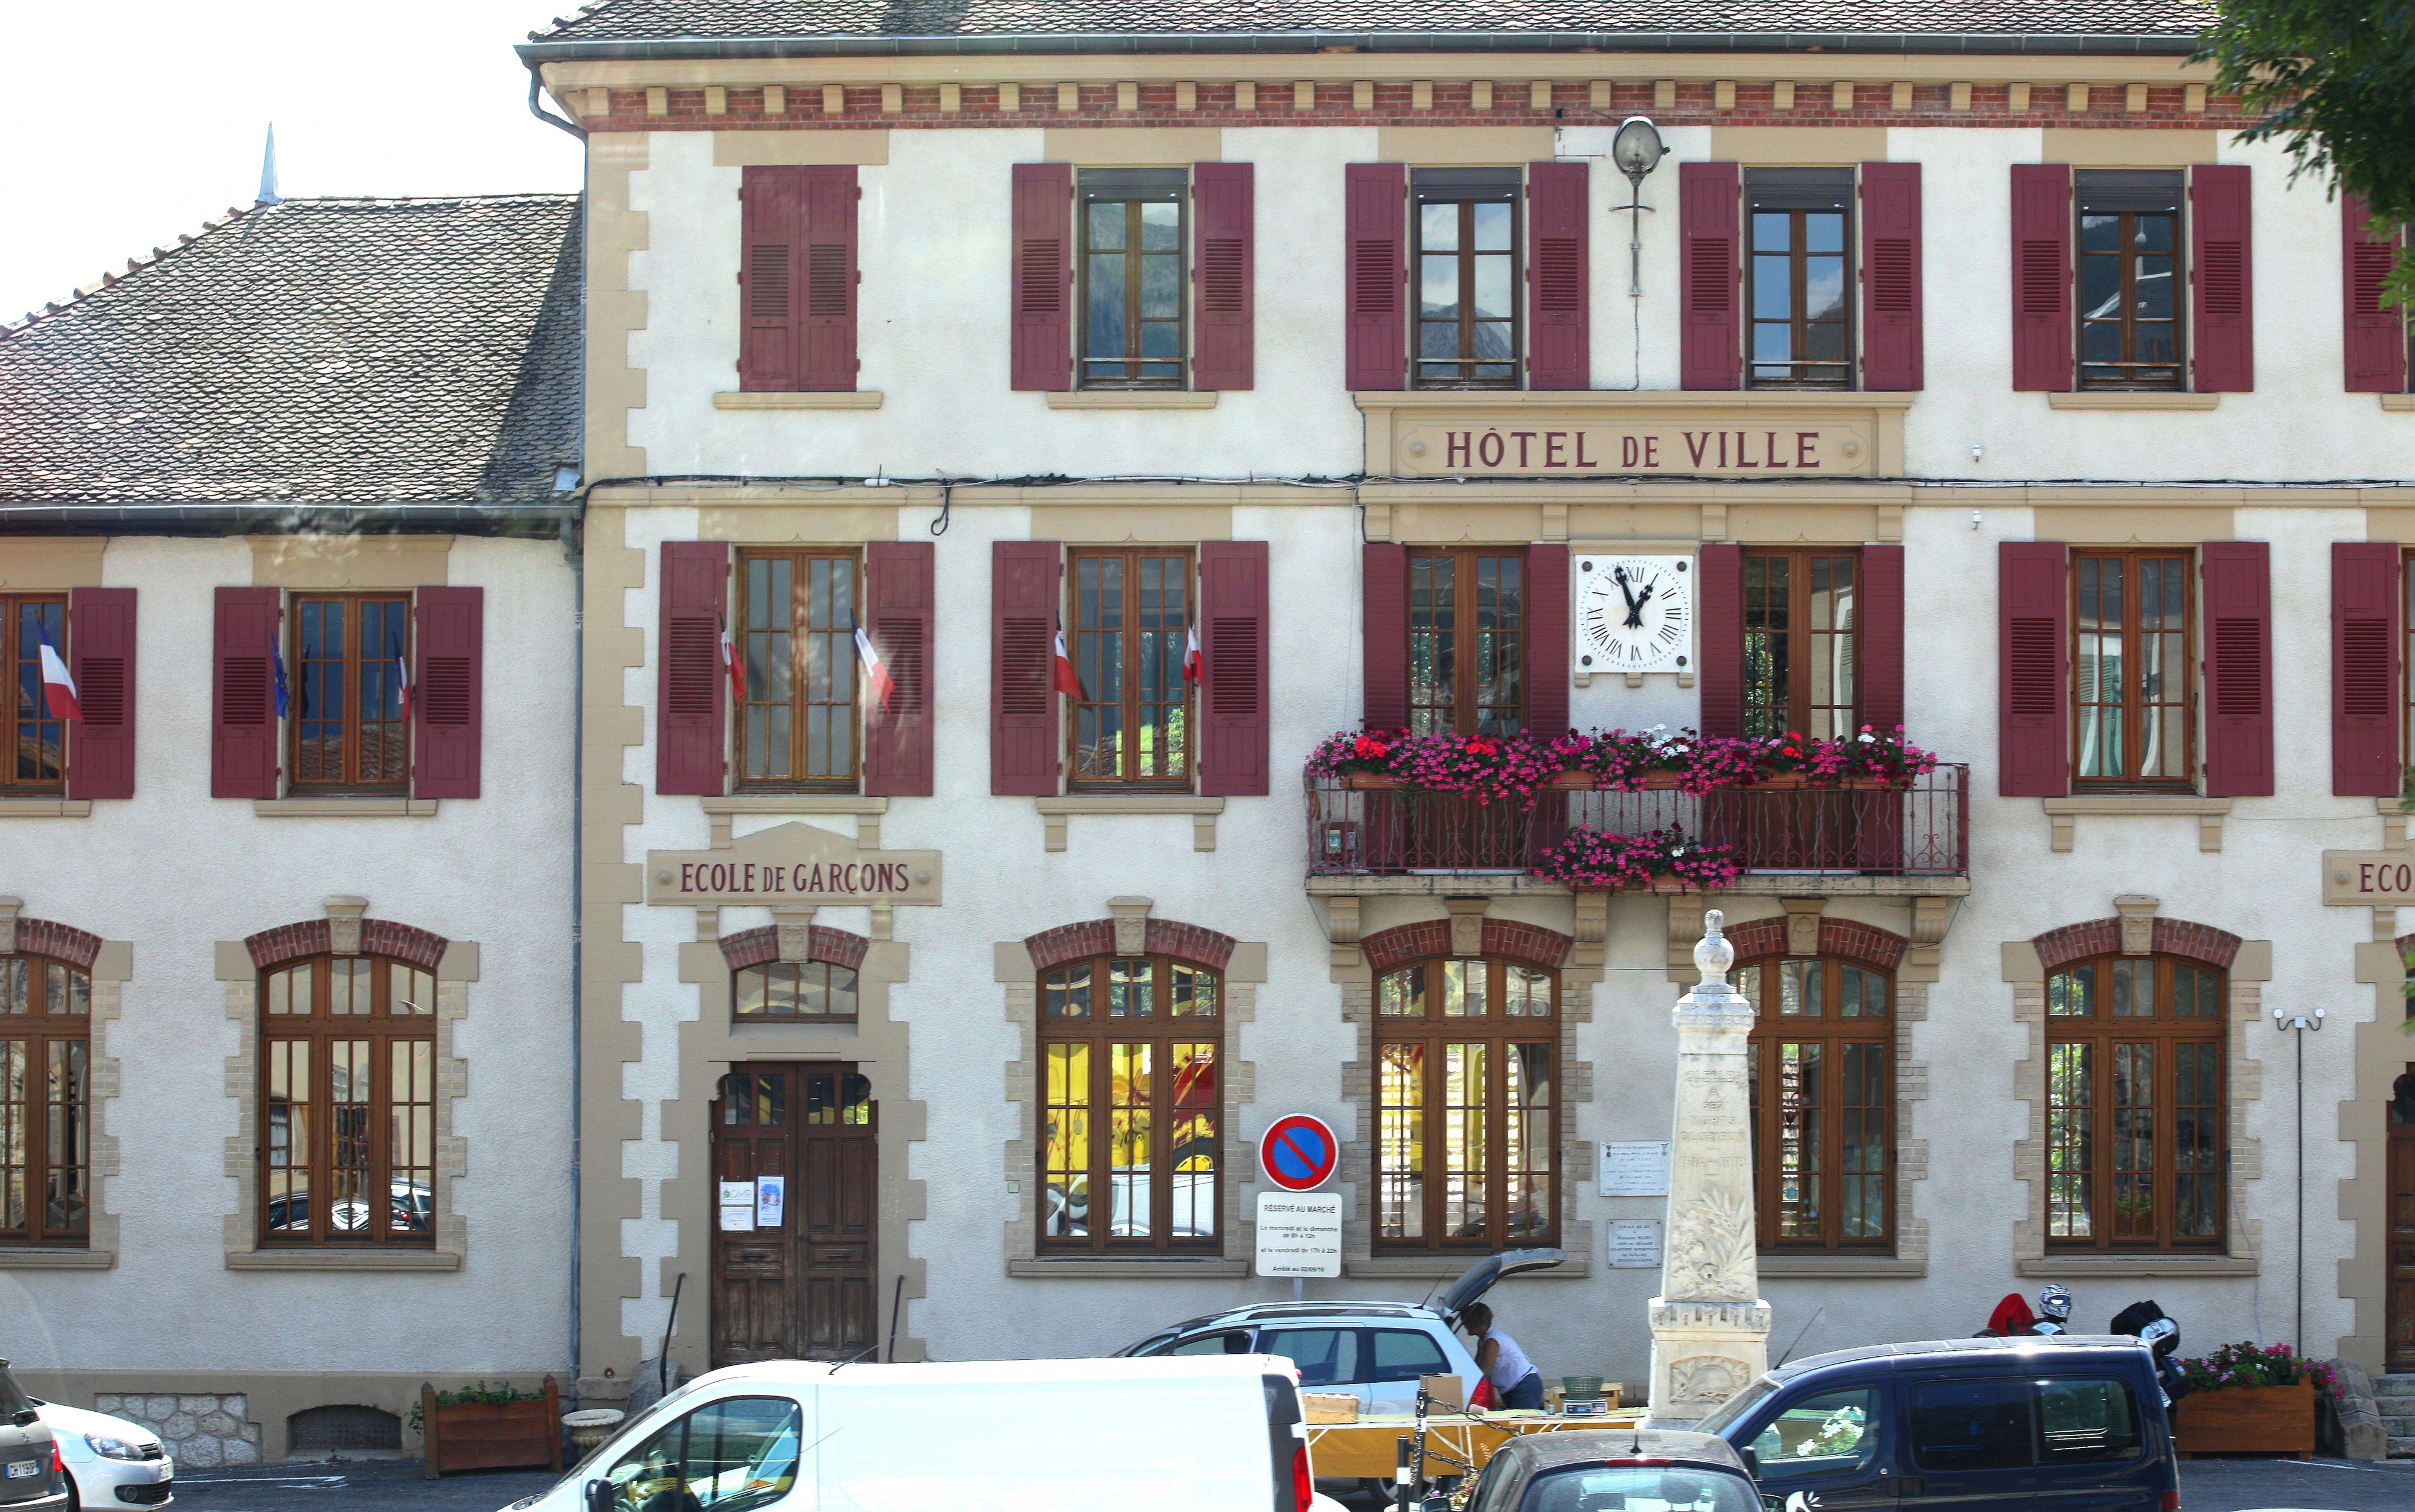 Hôtel de Ville, somewhere in France, August 2013